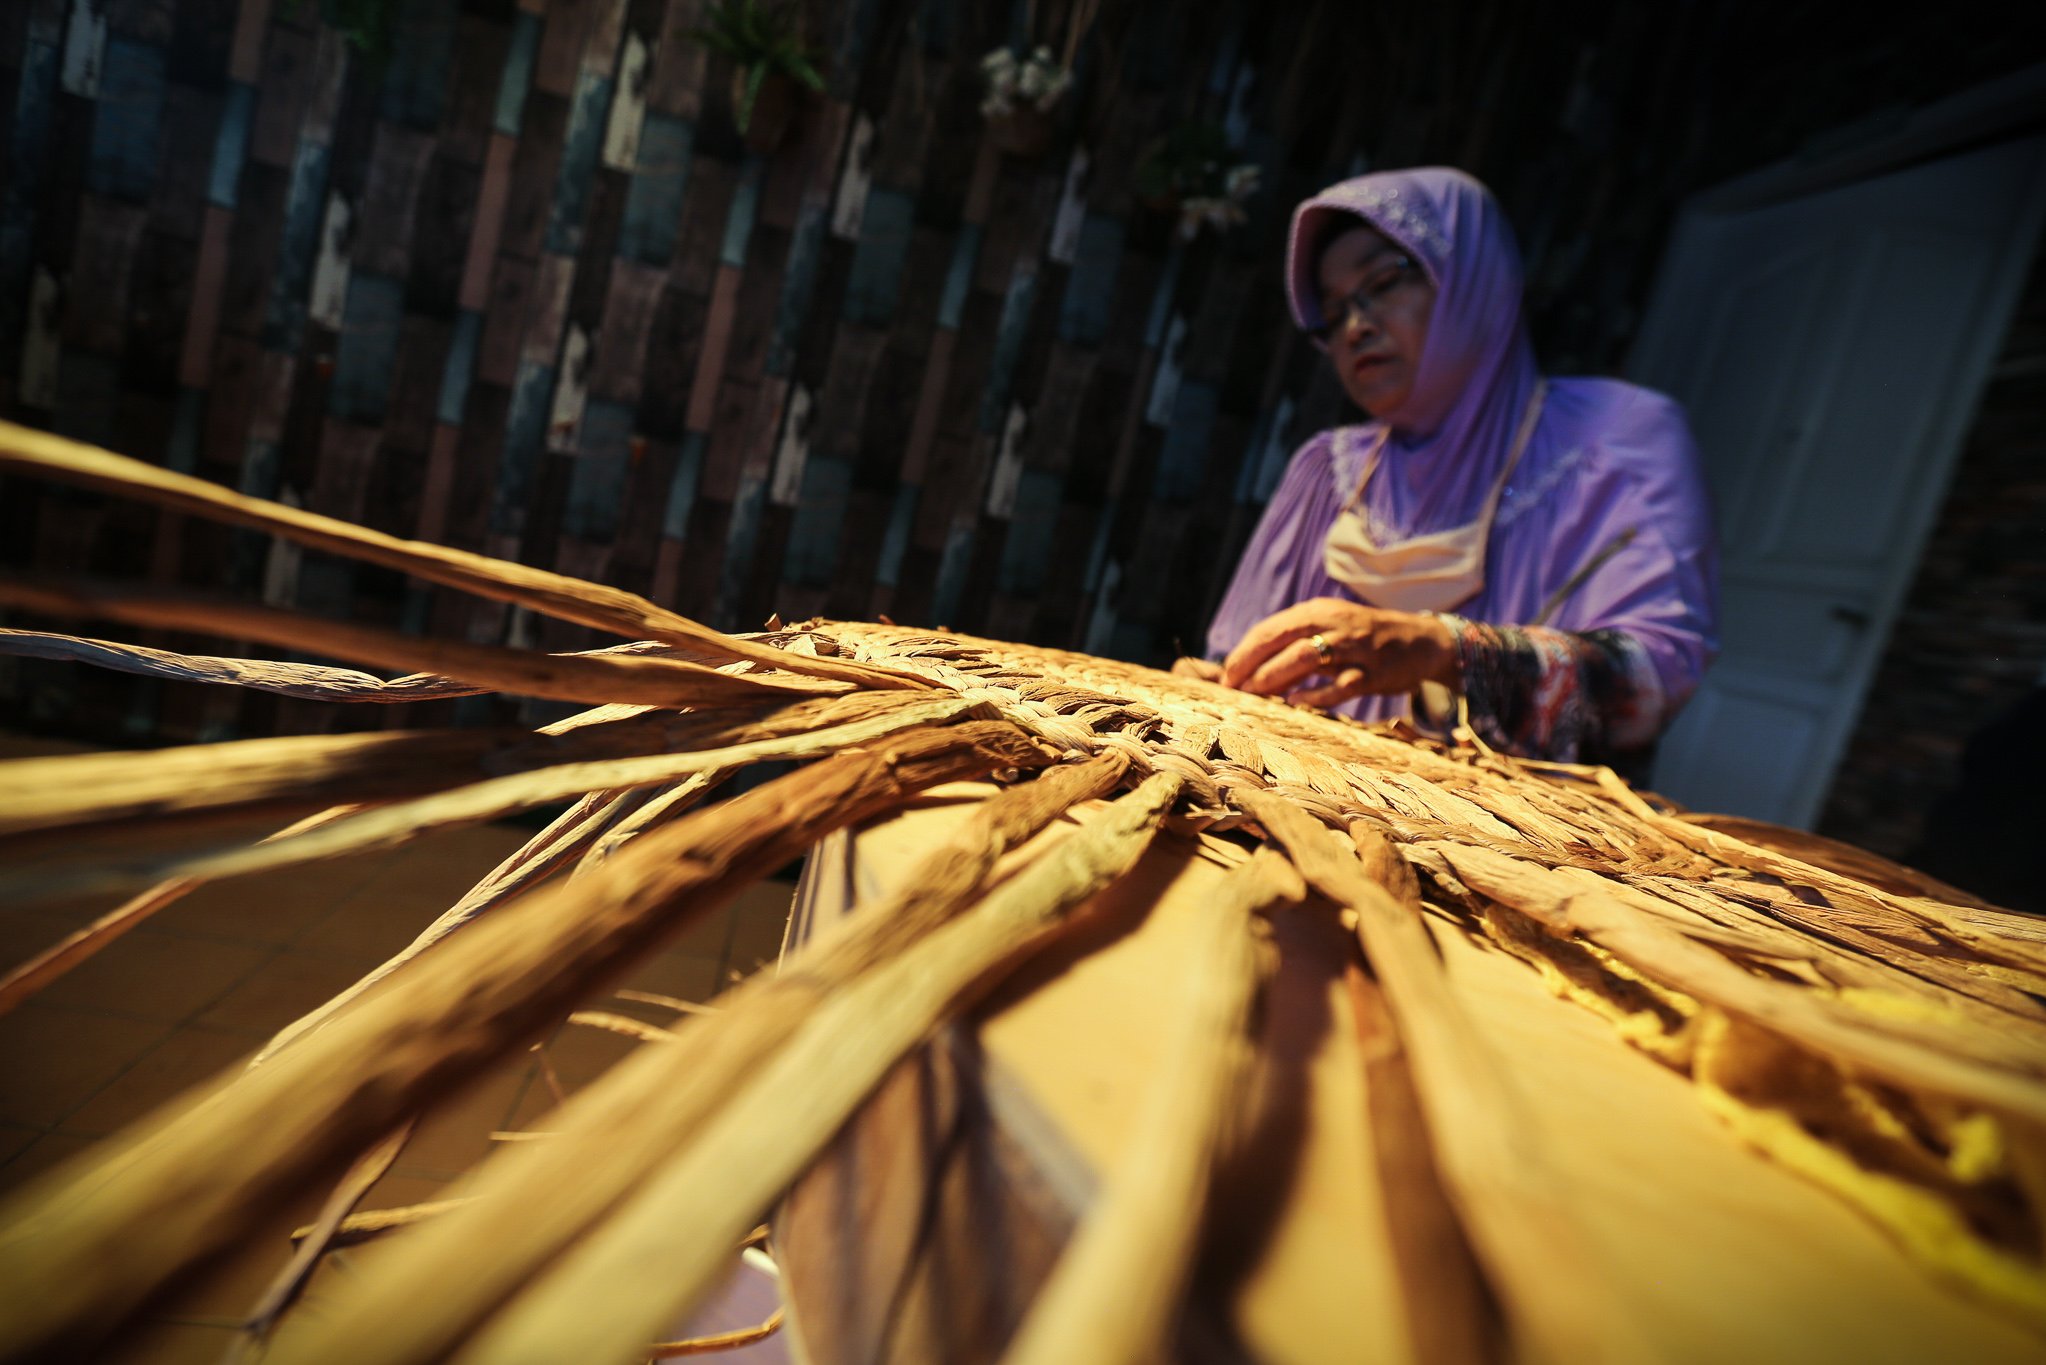 Perajin menyelesaikan pembuatan kerajinan tangan berbahan dasar tanaman eceng gondok di Isna Puring, Batam, Kepulauan Riau.